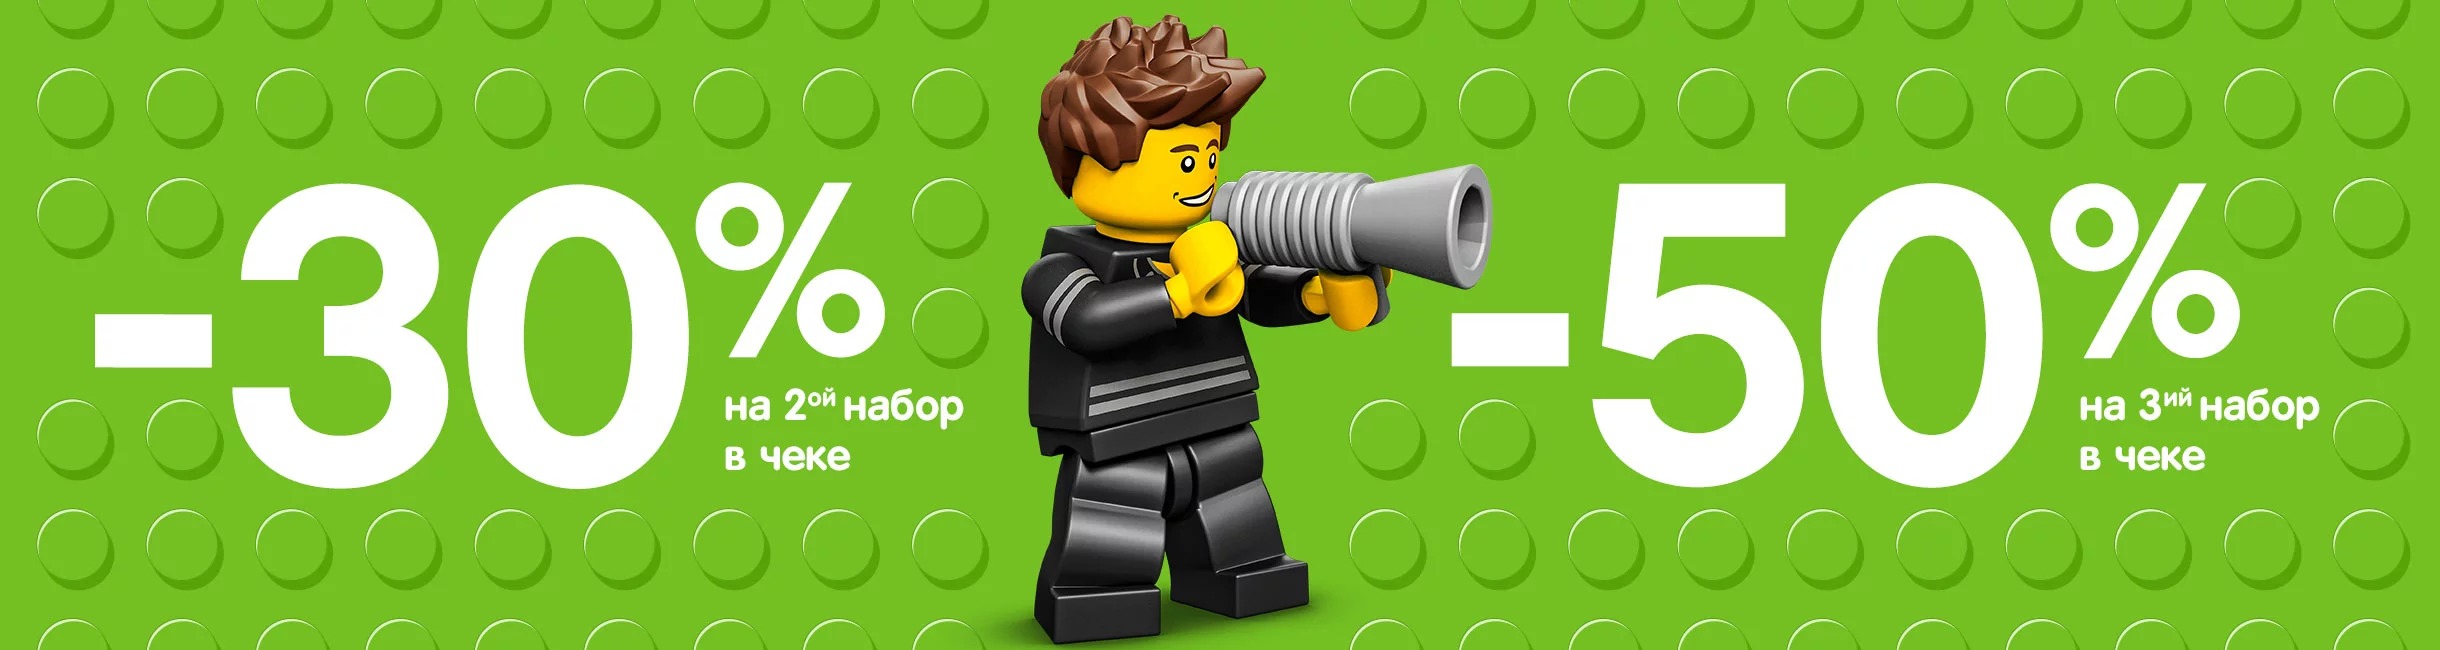 Рекламная акция LEGO (Лего) «Всё со скидками!»